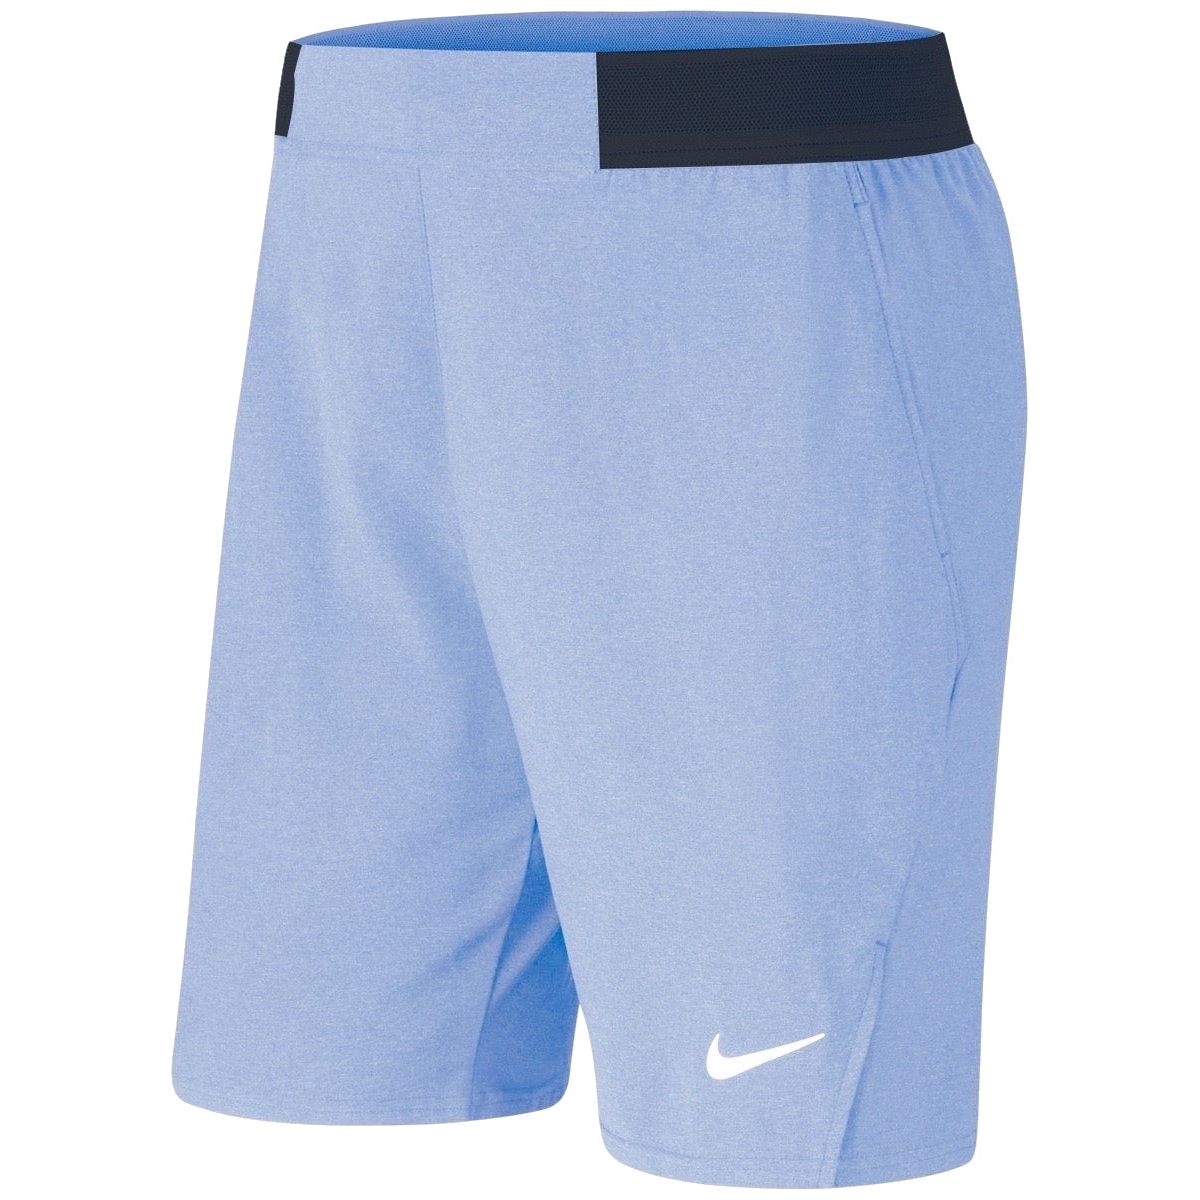 NikeCourt Flex Ace 9'' Men's Tennis Shorts CI9162-478